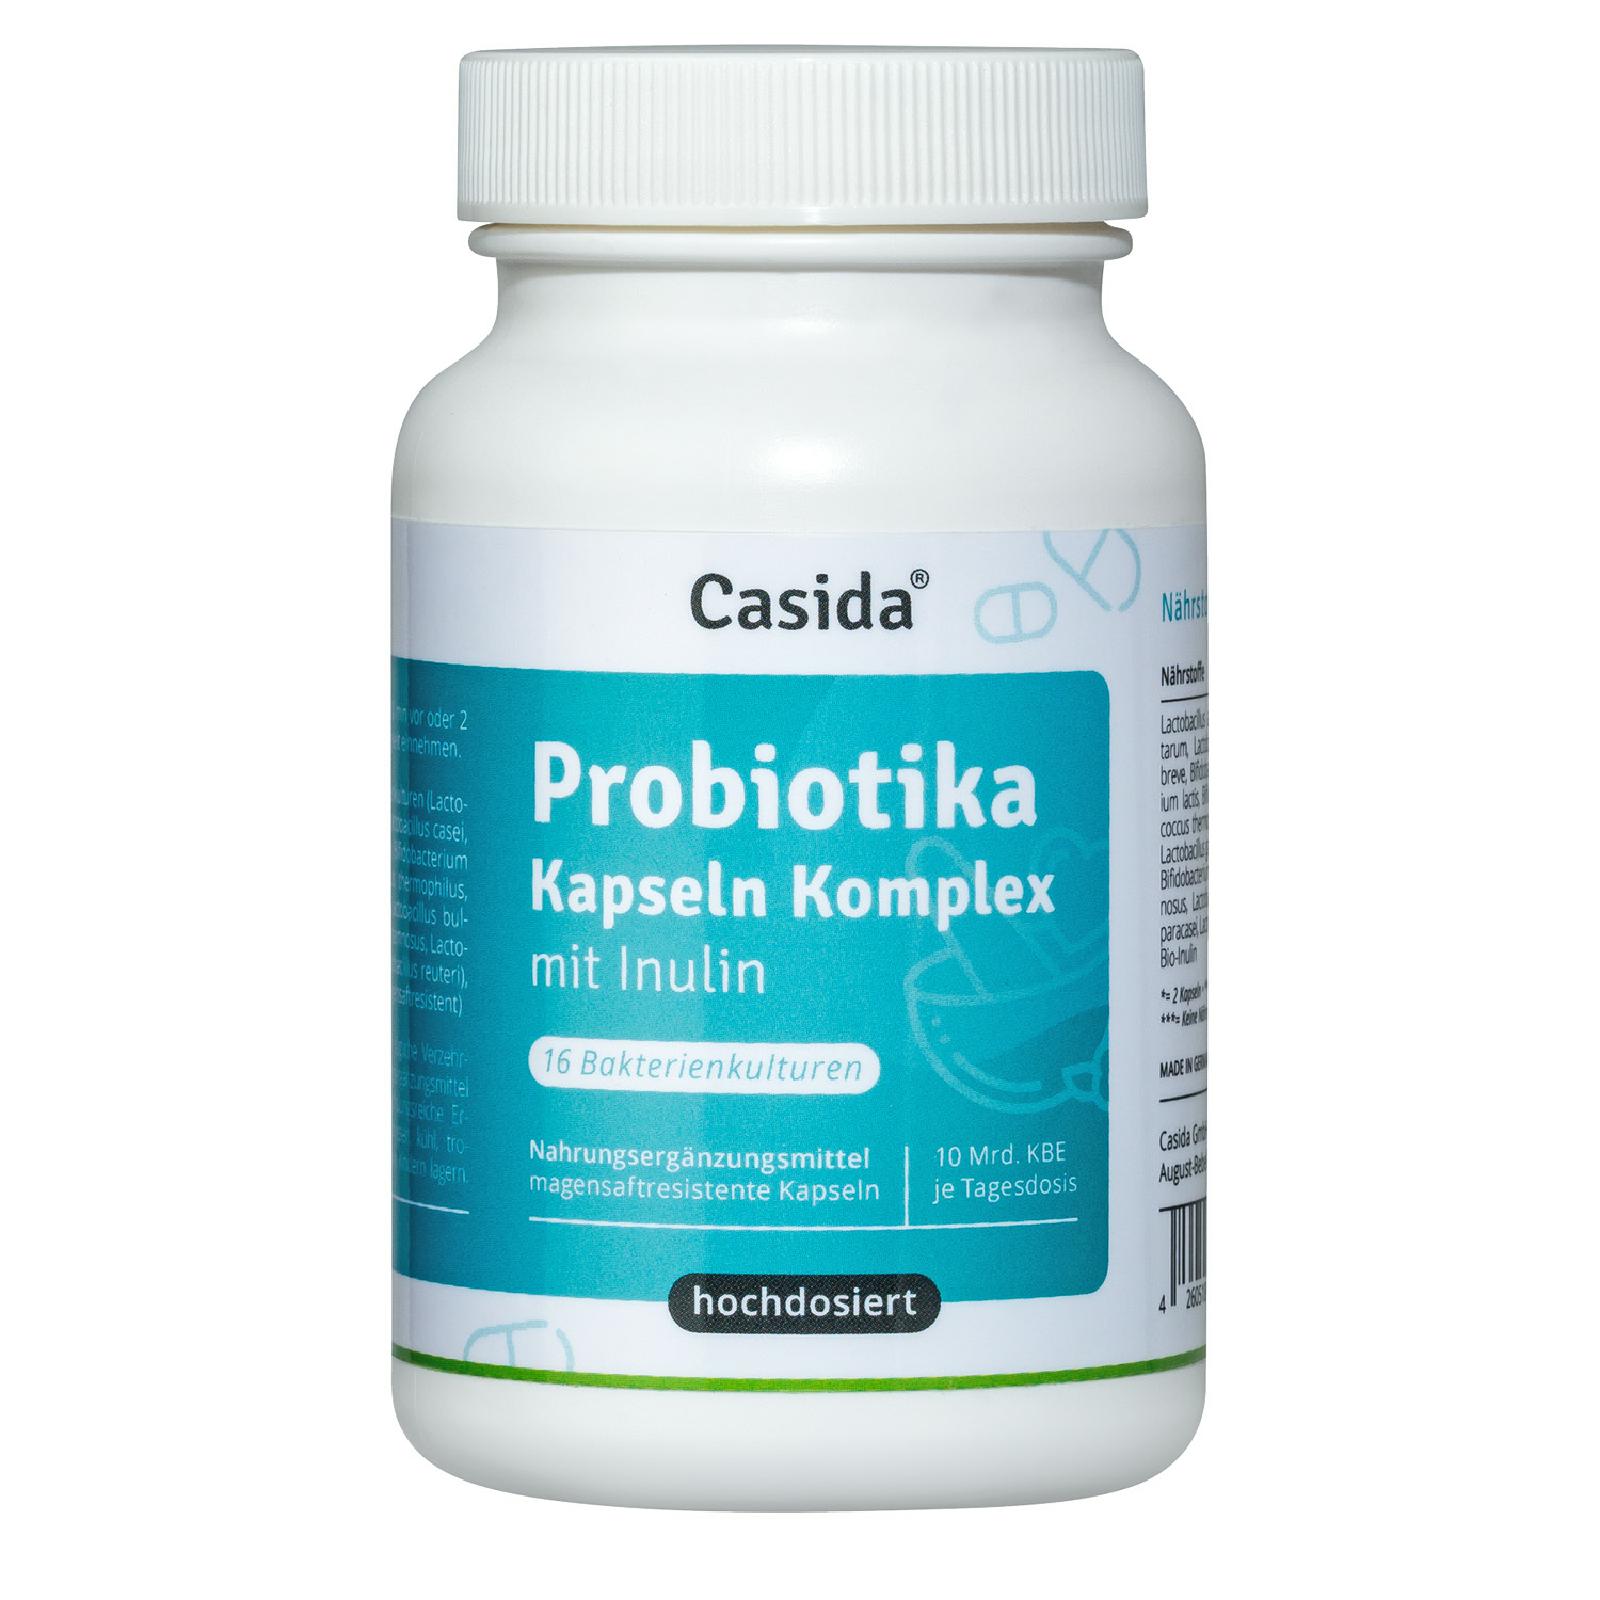 Casida Probiotika Kapseln Komplex mit Inulin